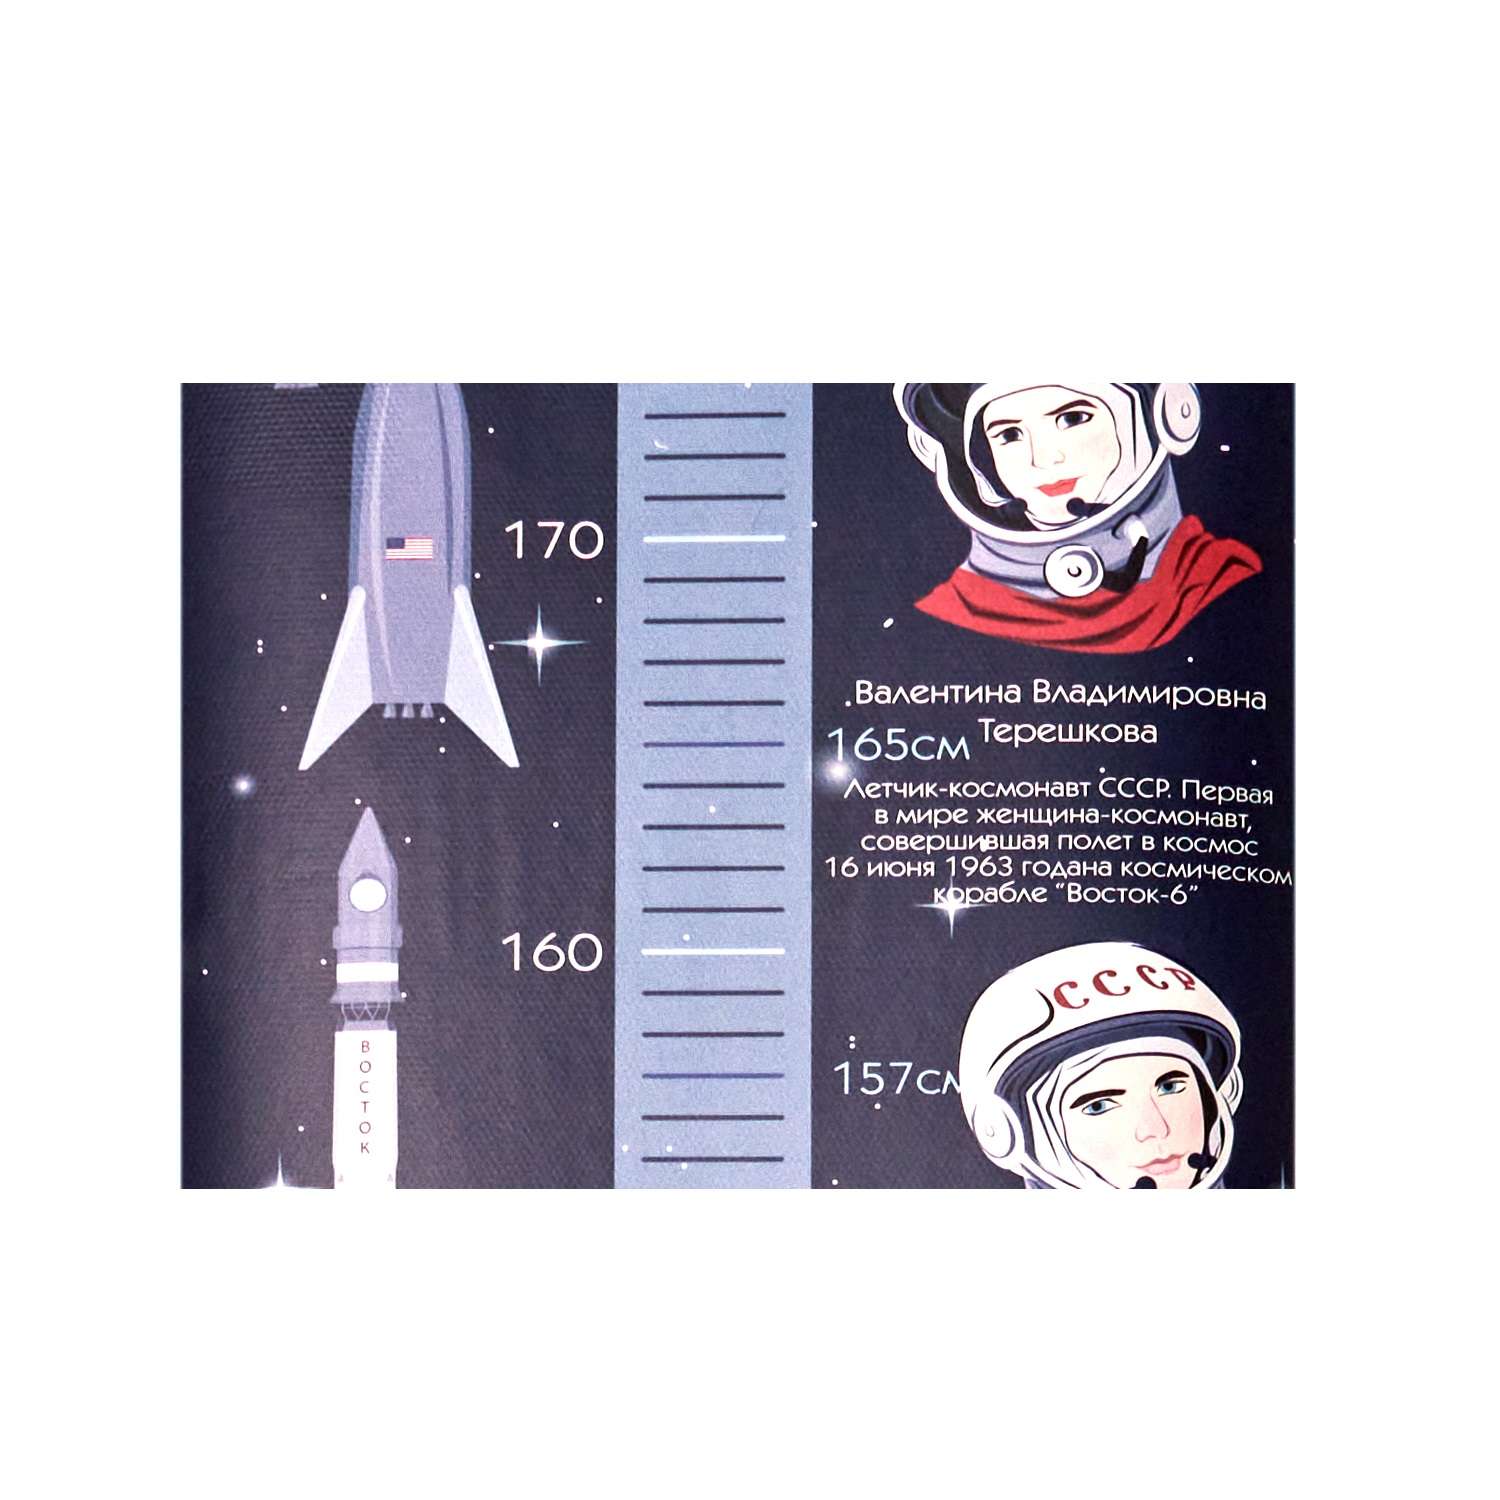 Ростомер  MASKBRO космический Илон Маск  Гагарин Терешкова для будущих космонавтов - фото 8